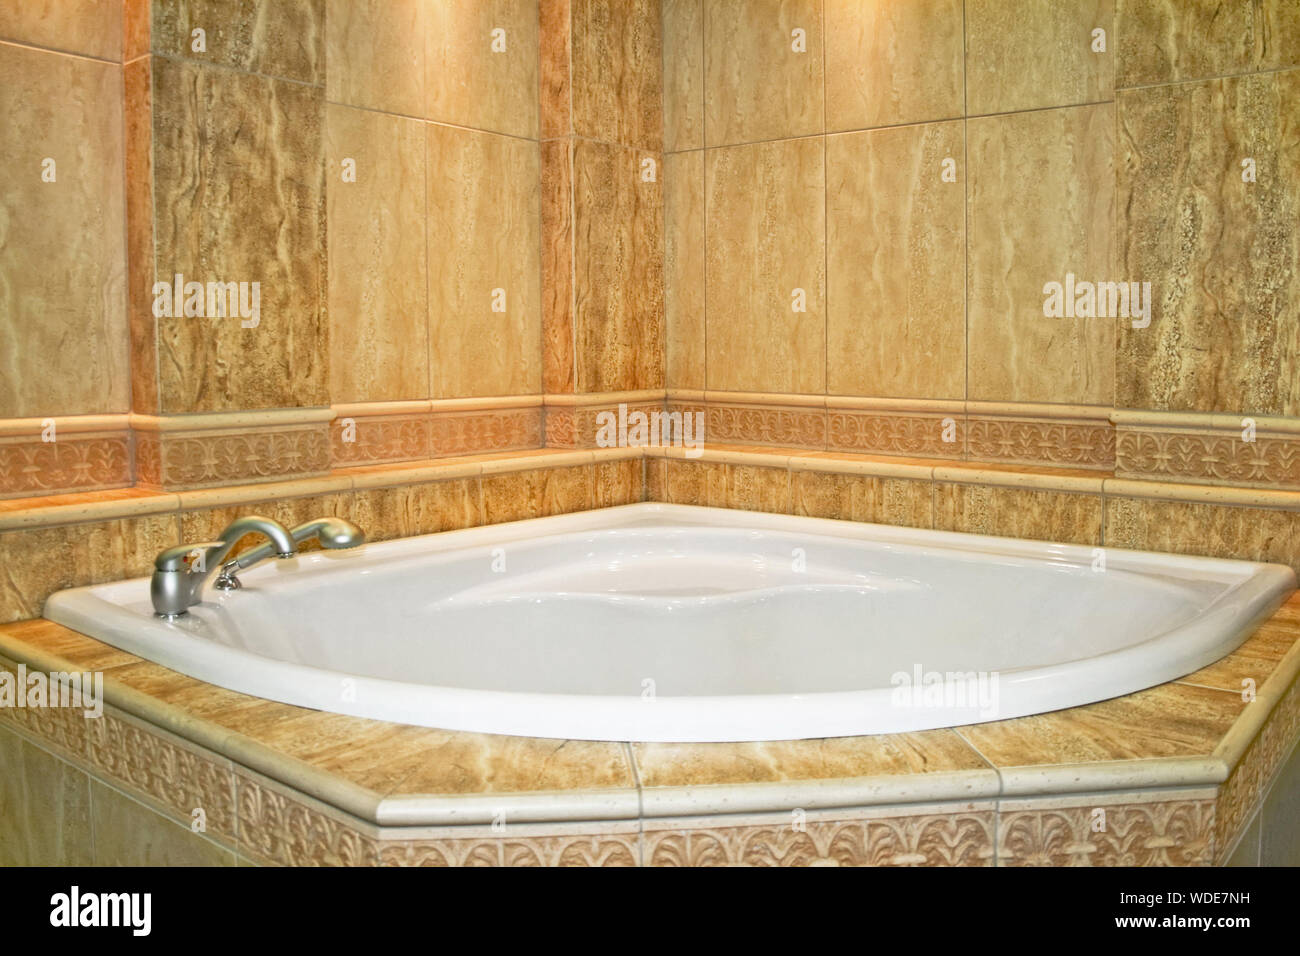 Big spa bath tub in marble bathroom Stock Photo